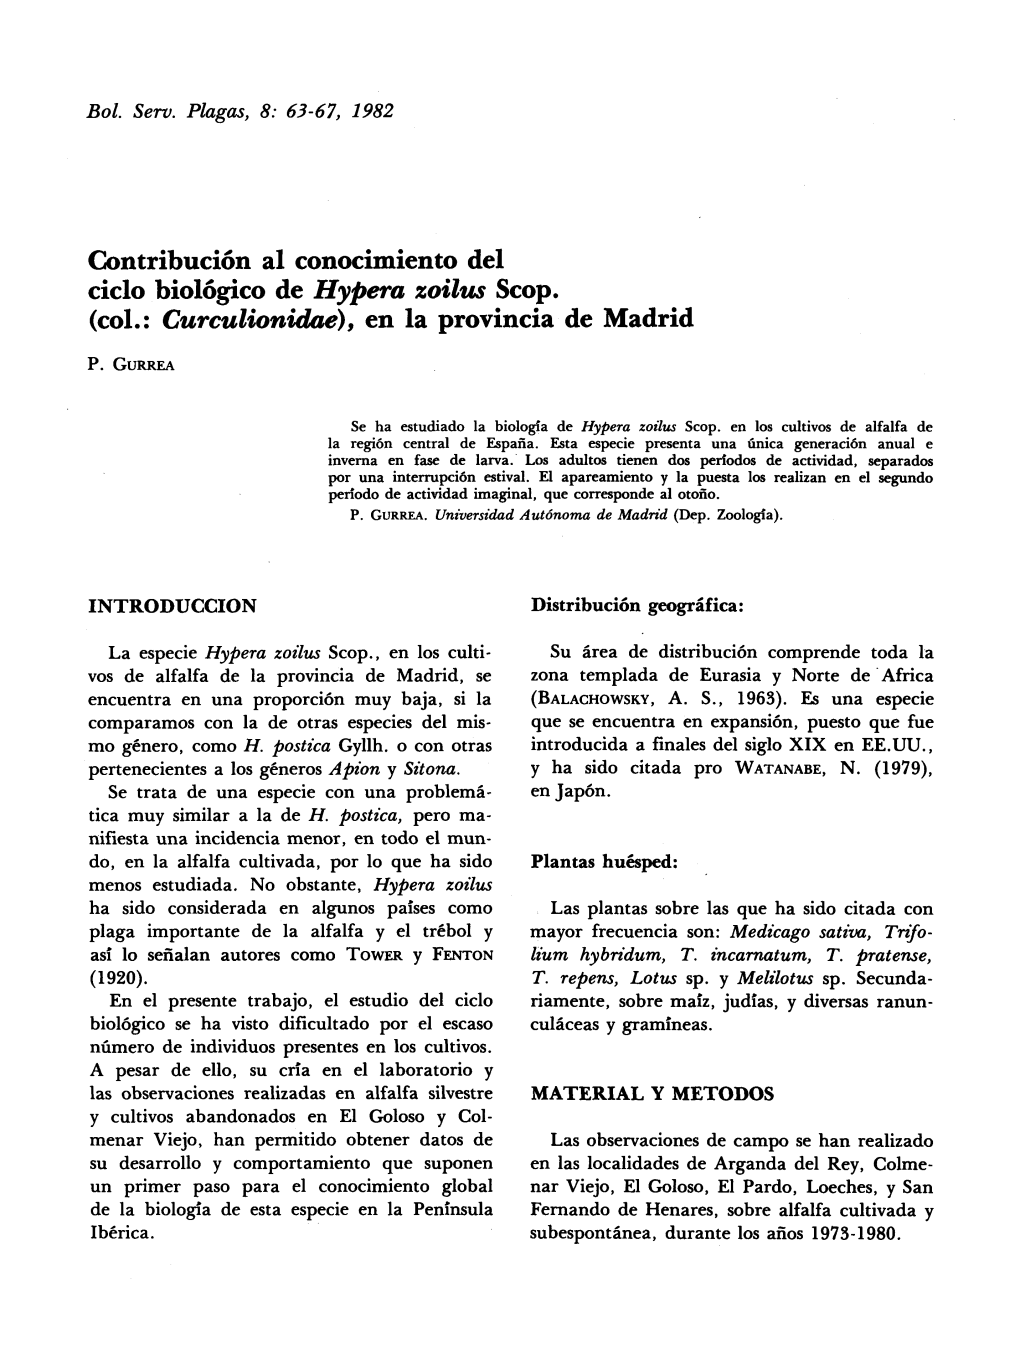 Contribución Al Conocimiento Del Ciclo Biológico De Hypera Zoilus Scop. (Col.: Curculionidae), En La Provincia De Madrid